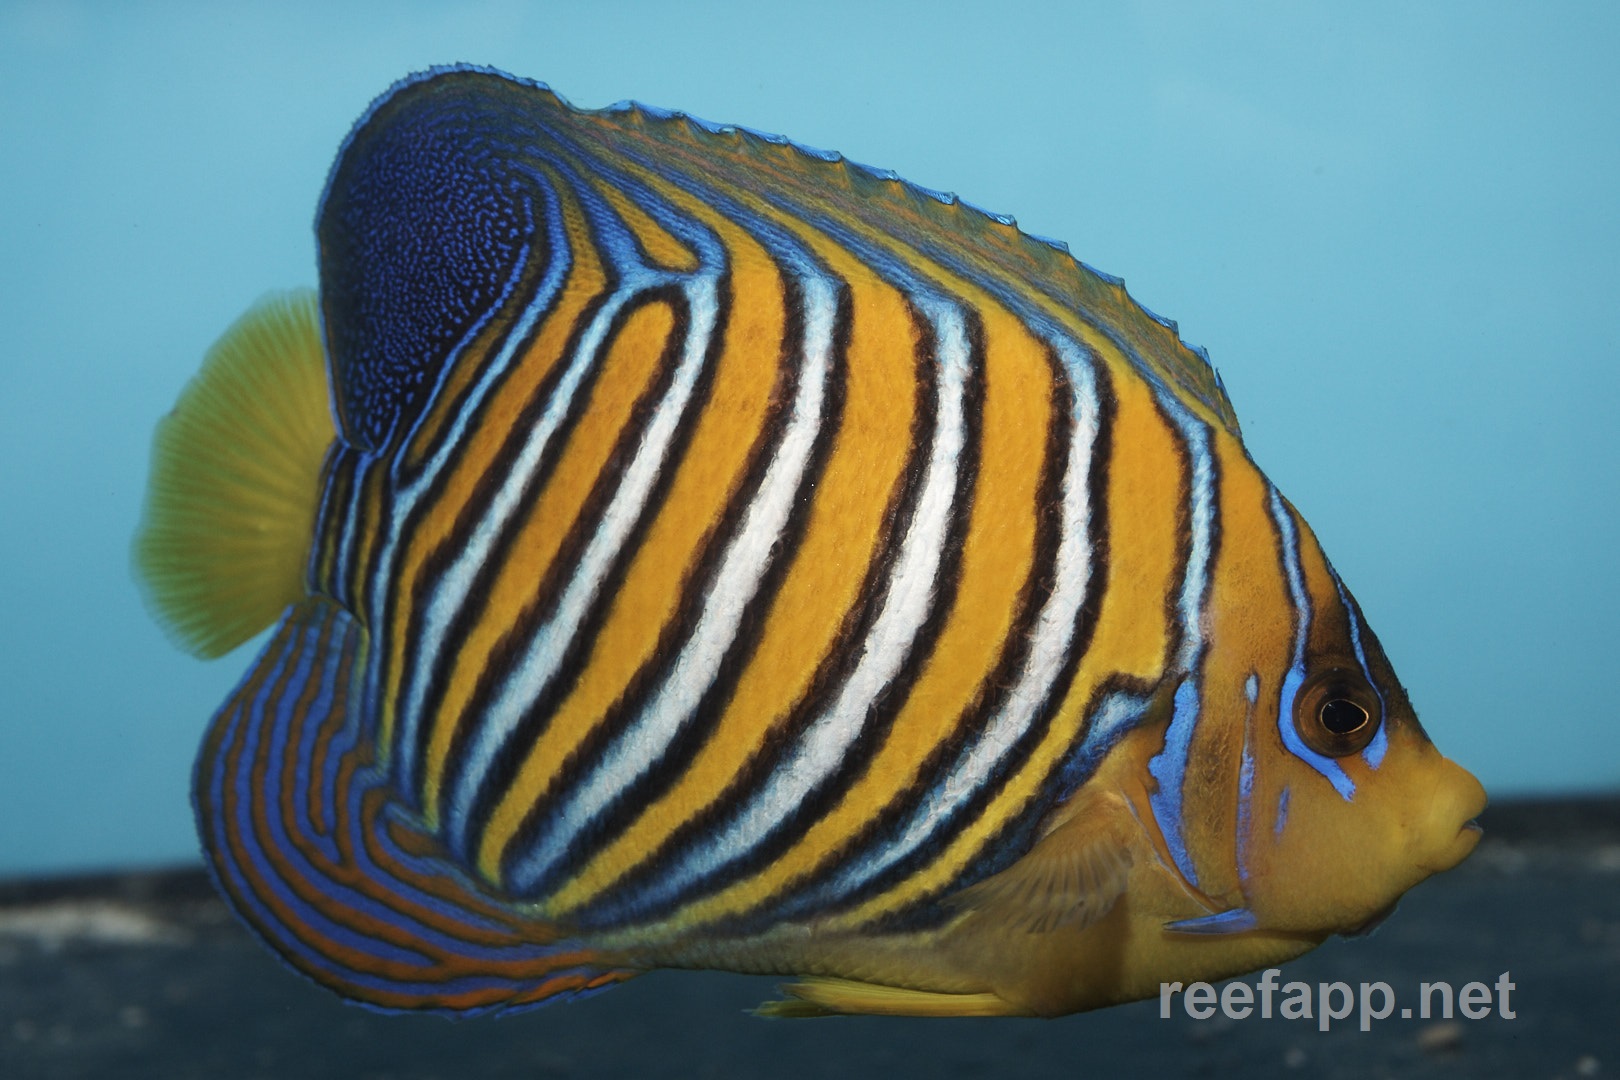 Pygoplites diacanthus (Regal angelfish)